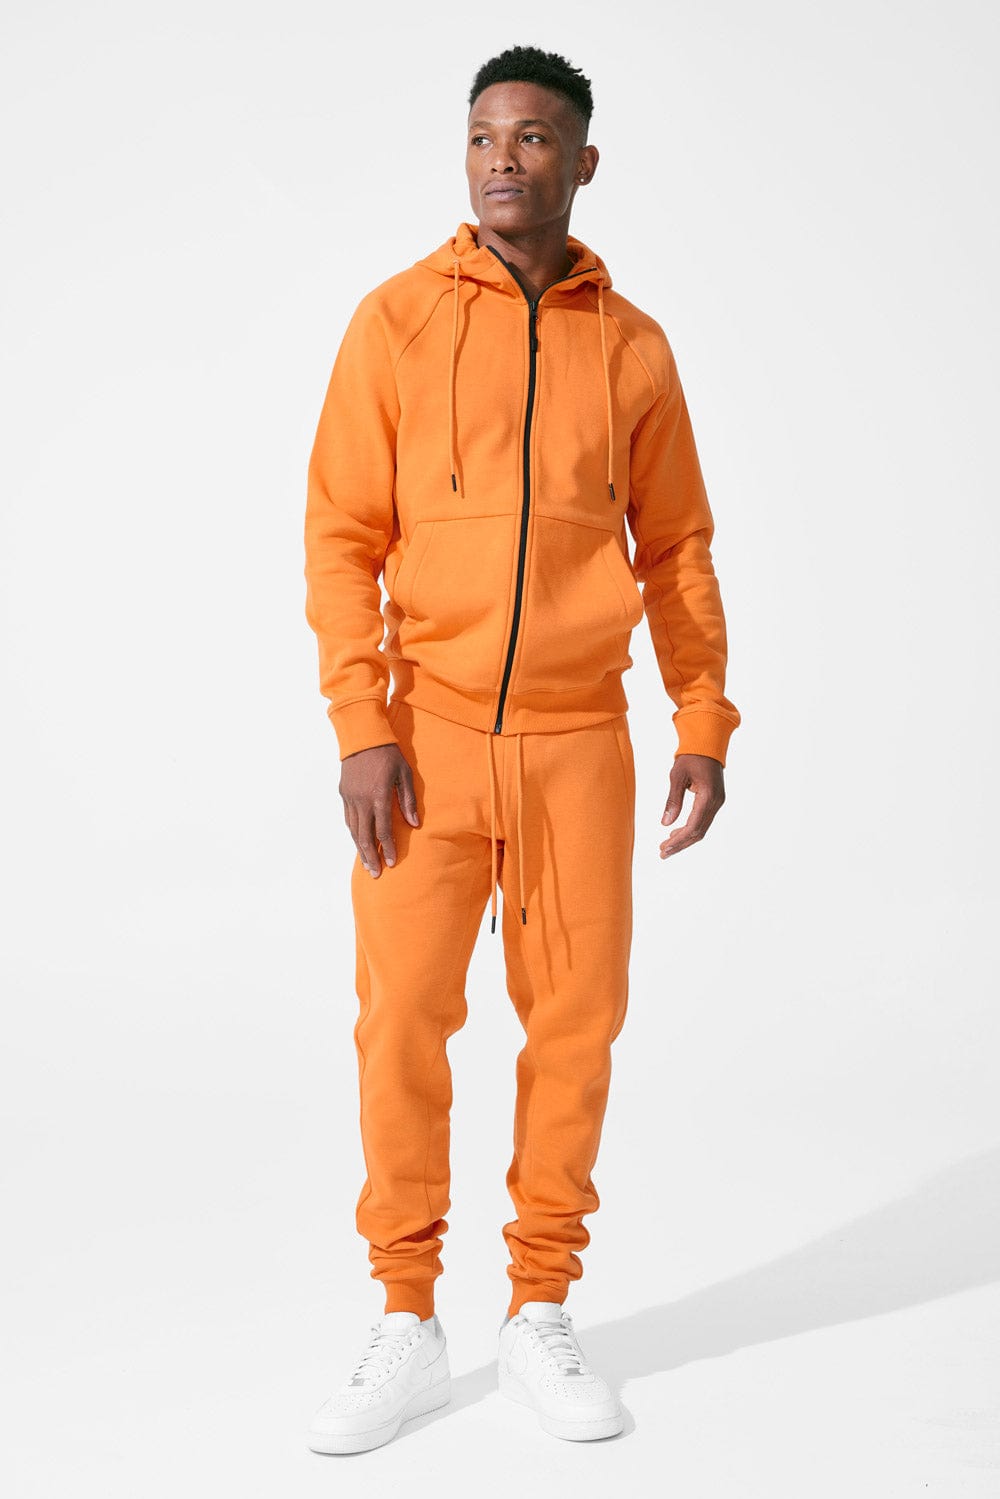 Jordan Craig Uptown Zip Up Hoodie (Orange)